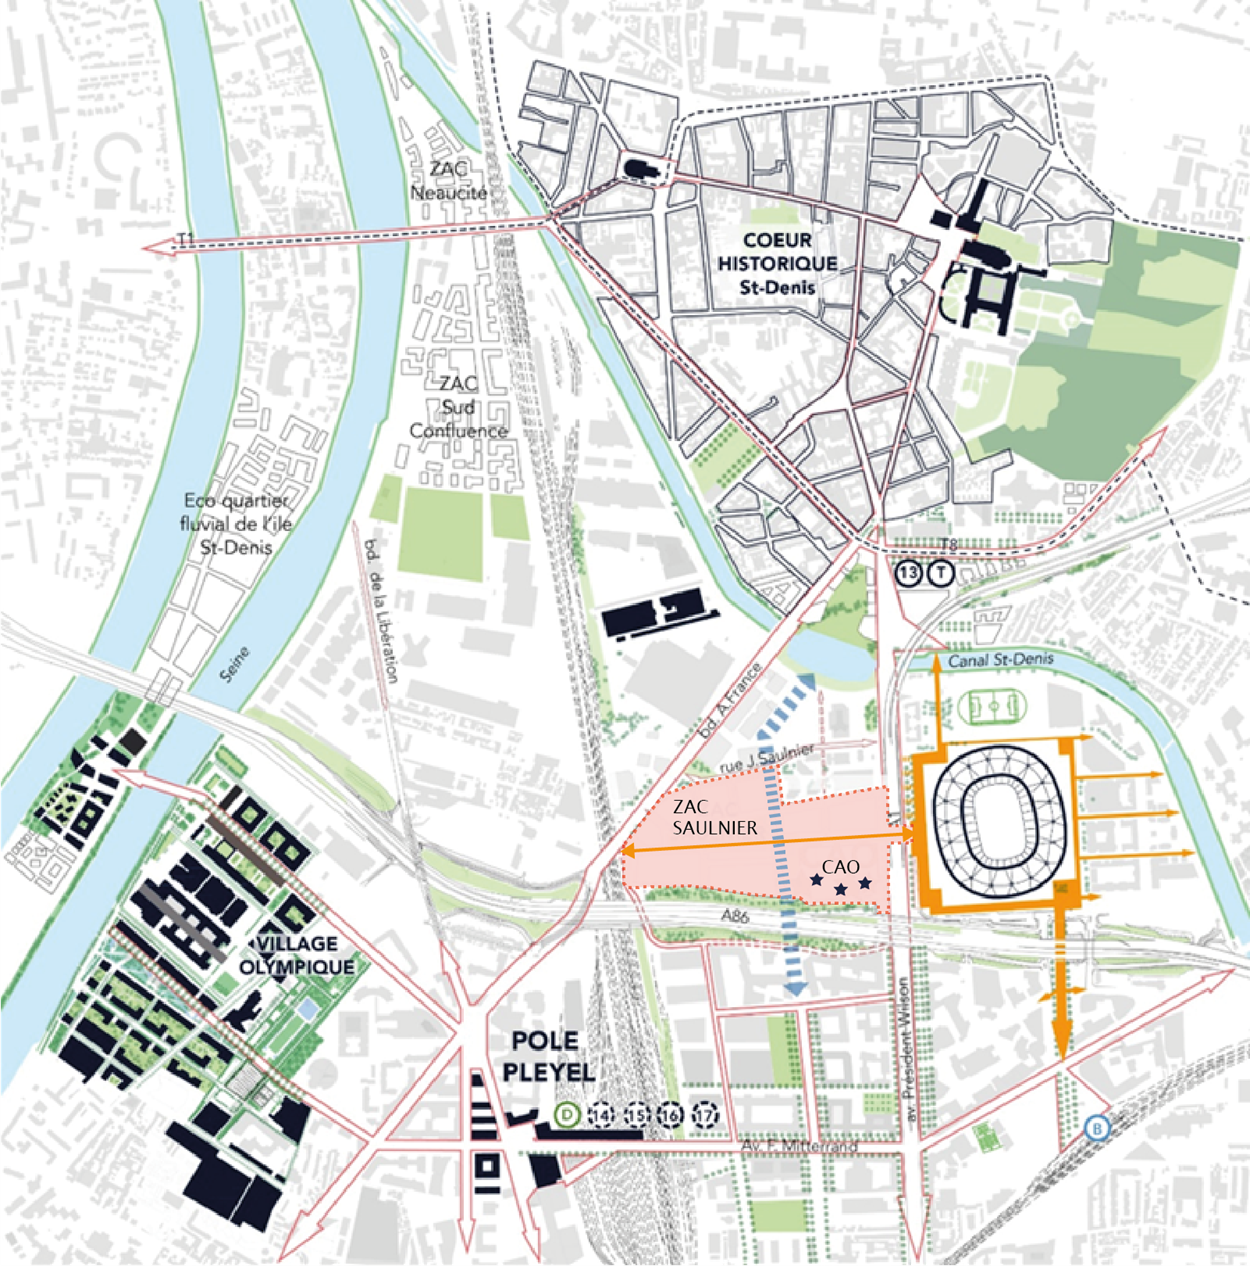 Plan de situation des projets à grande échelle urbaine (source : Leclercq Associés, 2018)